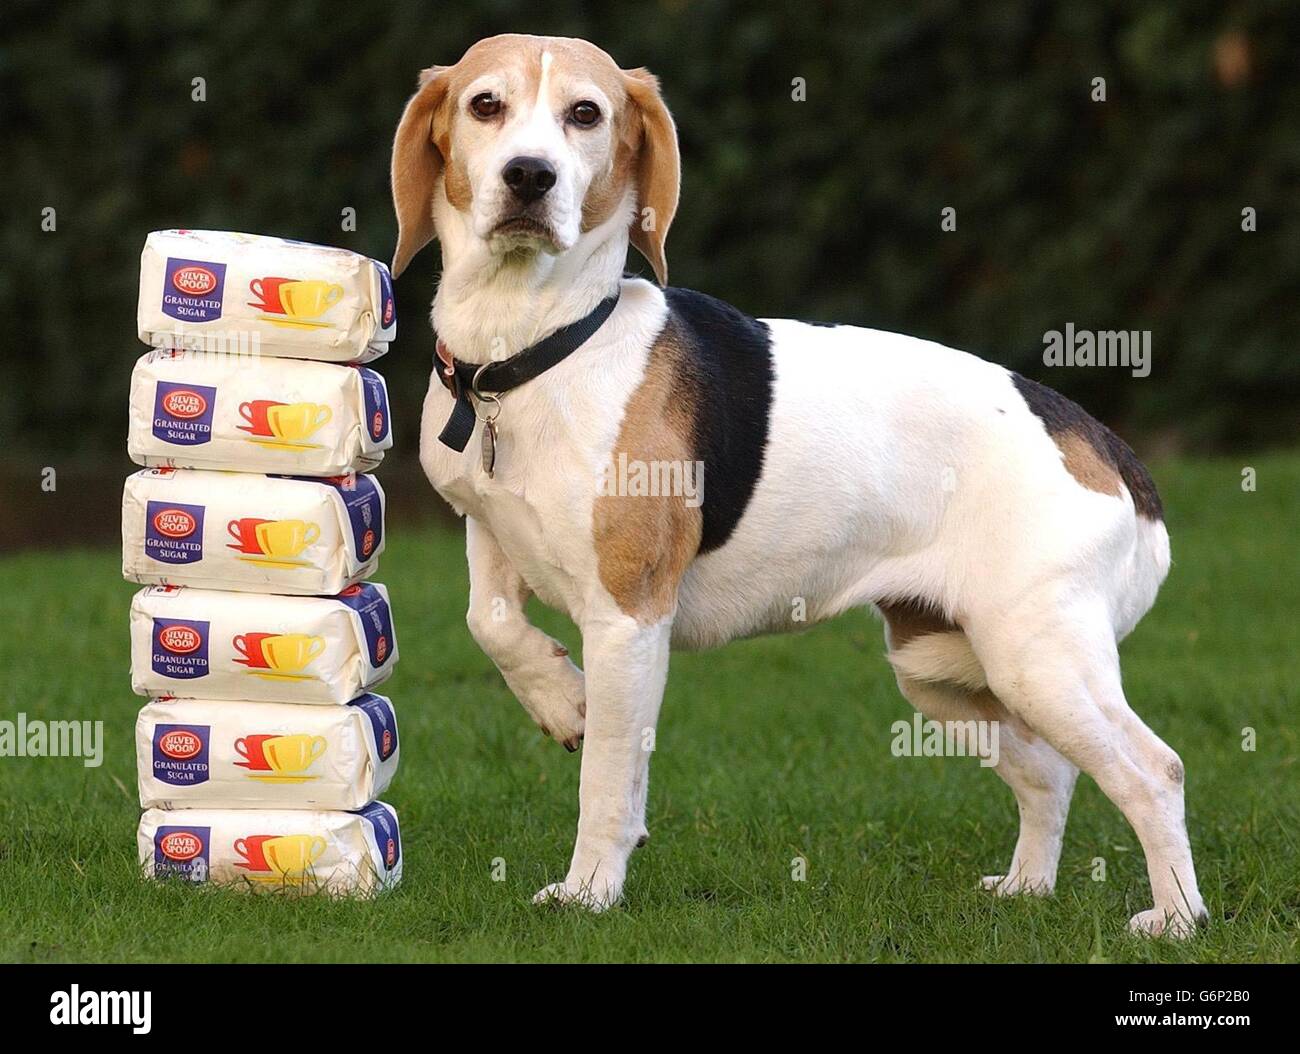 Megan, ein Beagle aus Garston in Liverpool, zeigt ihre neue Figur neben Zuckertüten, die das Gewicht wiegen, das sie verloren hatte, nachdem sie den Preis für den schlankeren Hund des Jahres gewonnen hatte. Stockfoto